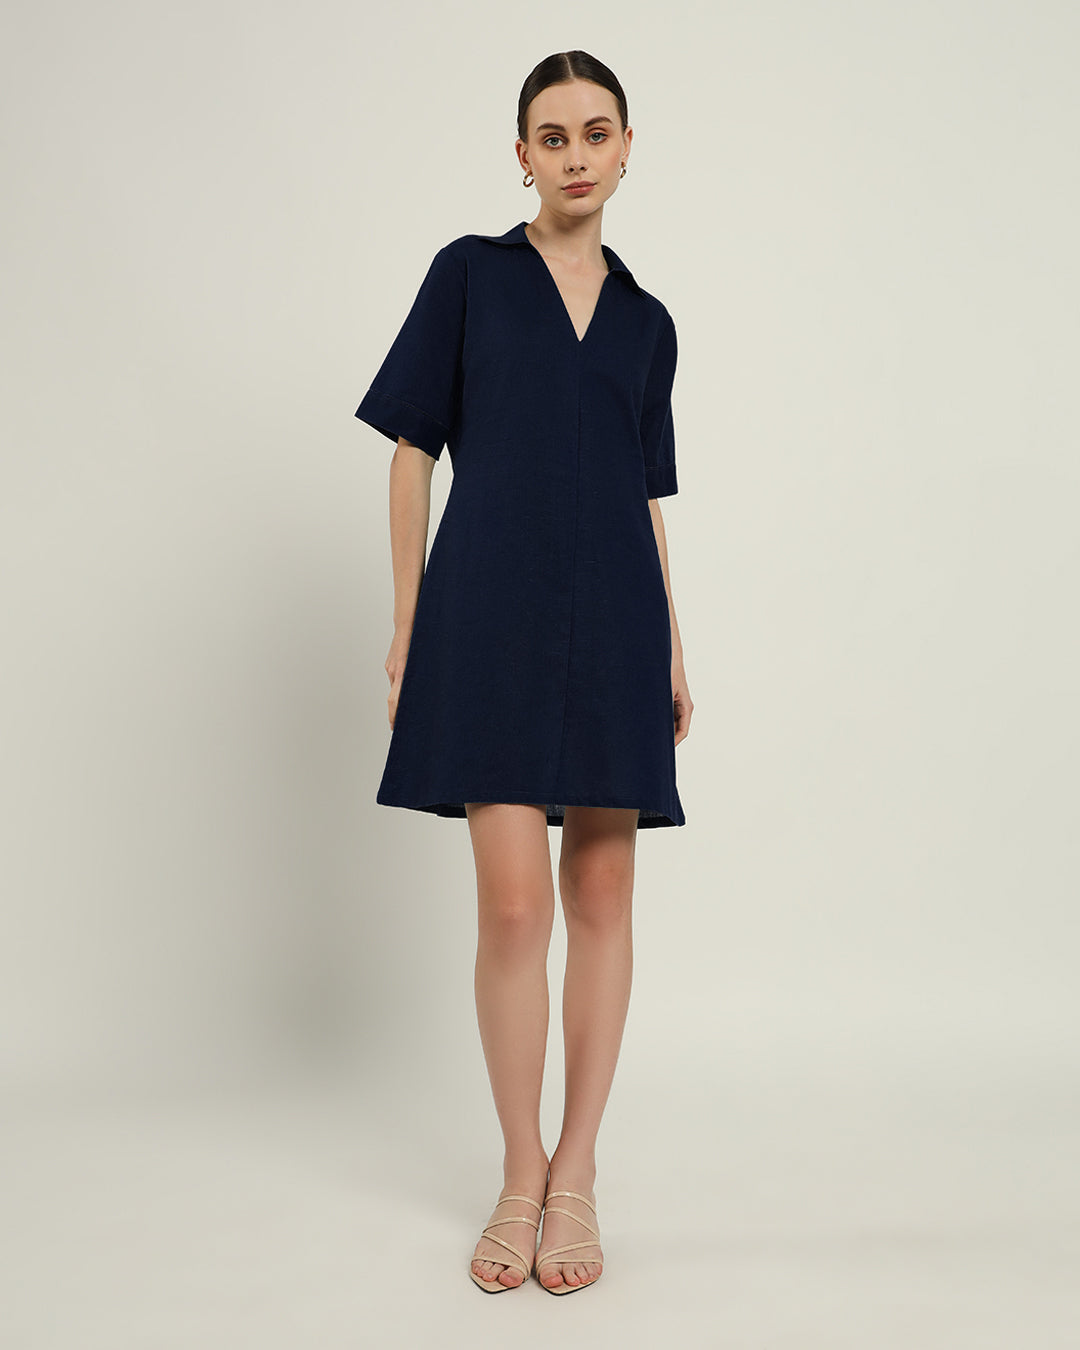 The Ermont Daisy Midnight Blue Linen Dress